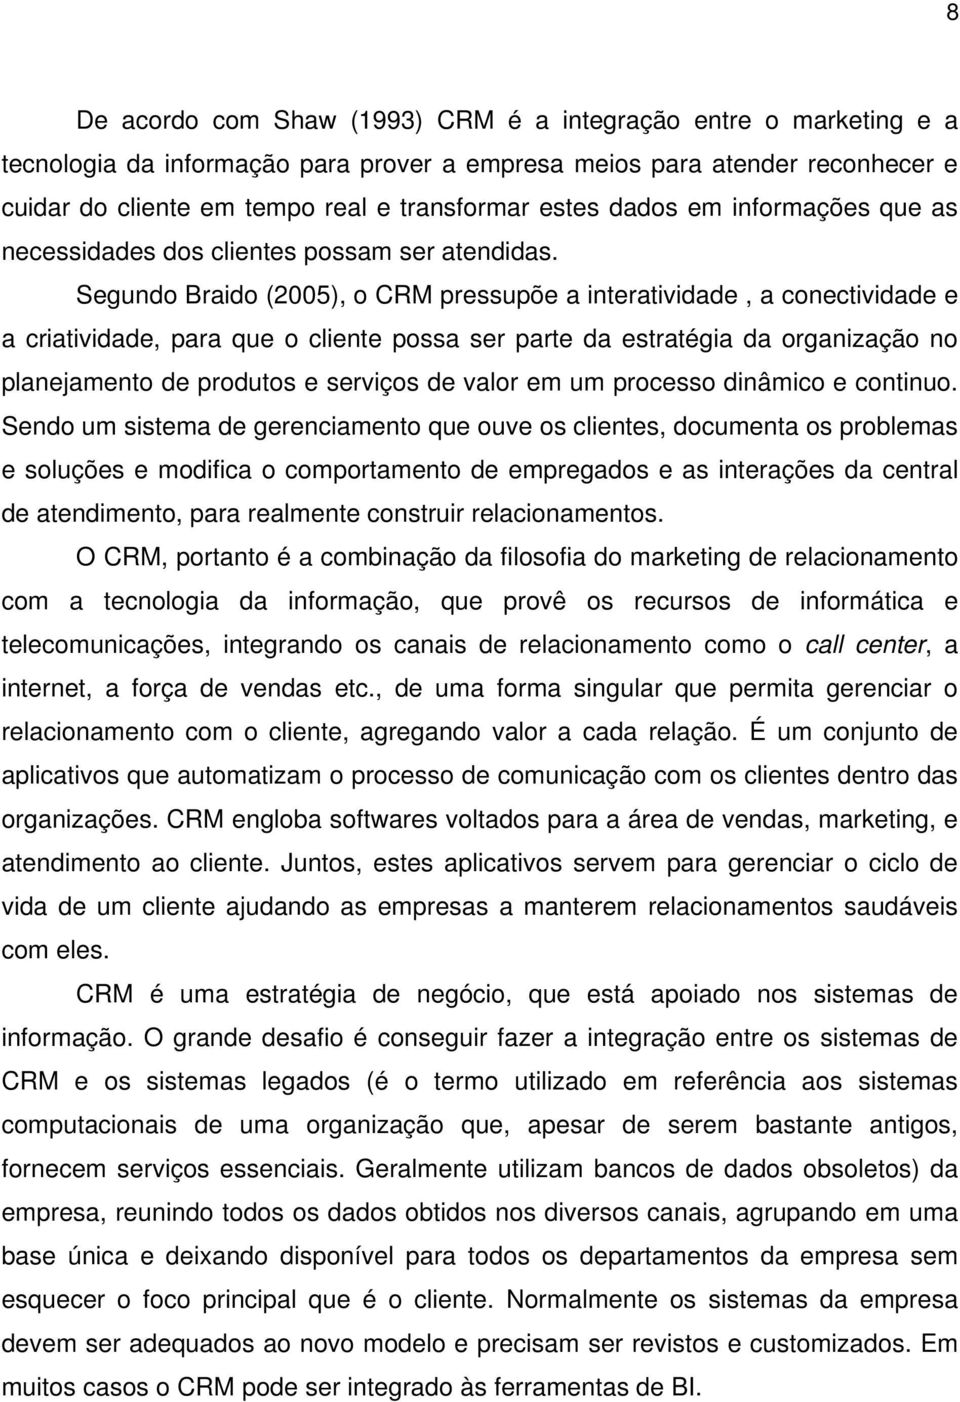 Segundo Braido (2005), o CRM pressupõe a interatividade, a conectividade e a criatividade, para que o cliente possa ser parte da estratégia da organização no planejamento de produtos e serviços de